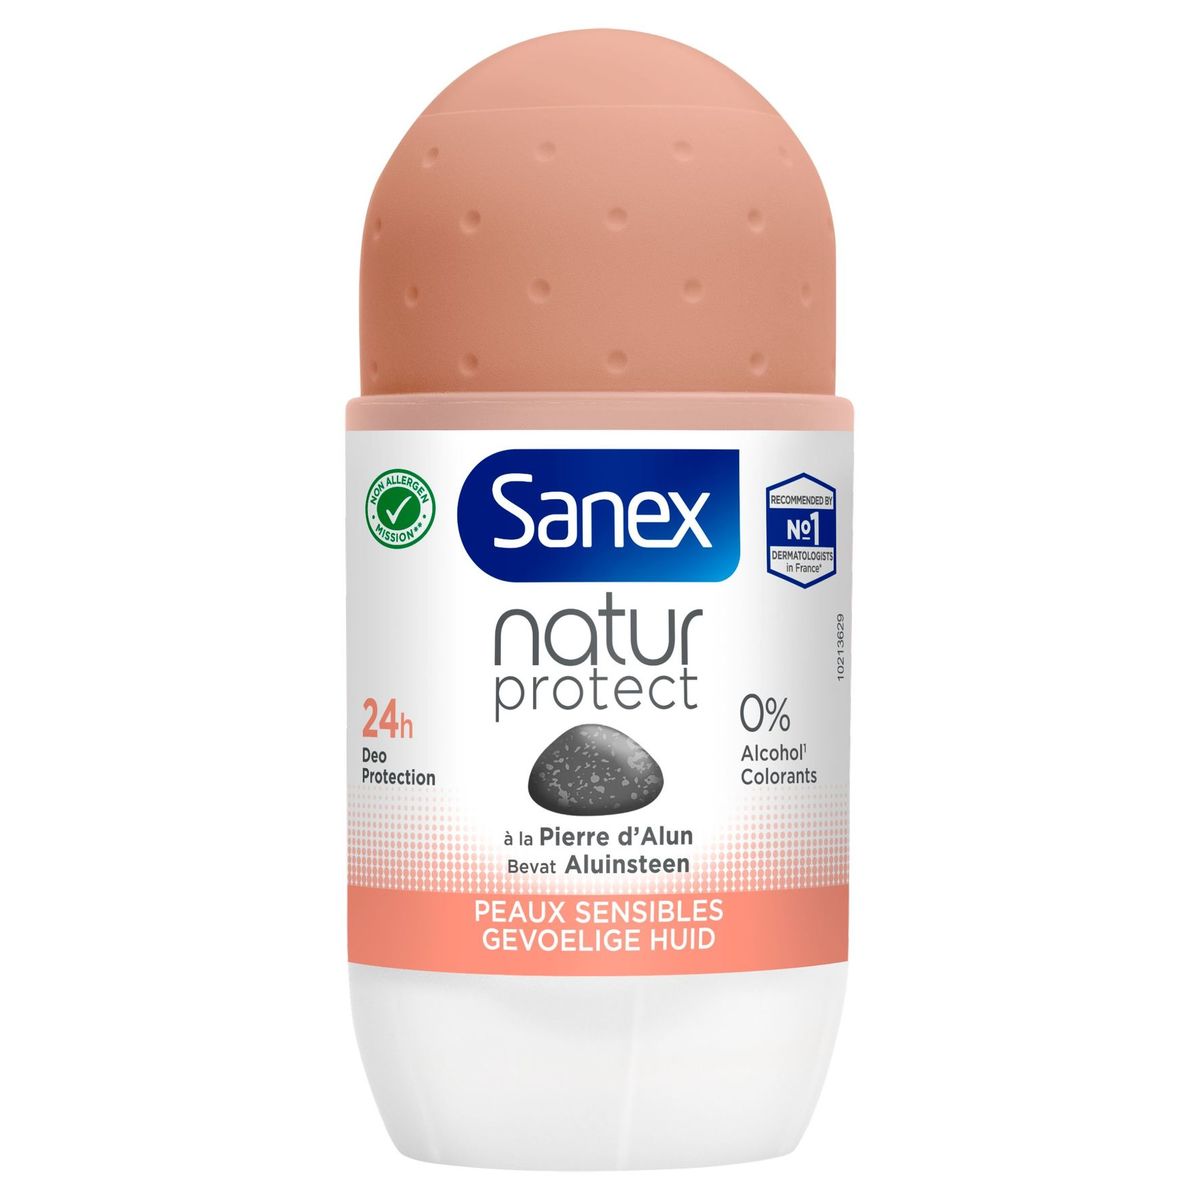 Sanex déodorant 24h Naturprotect peaux sensibles roll 50ml